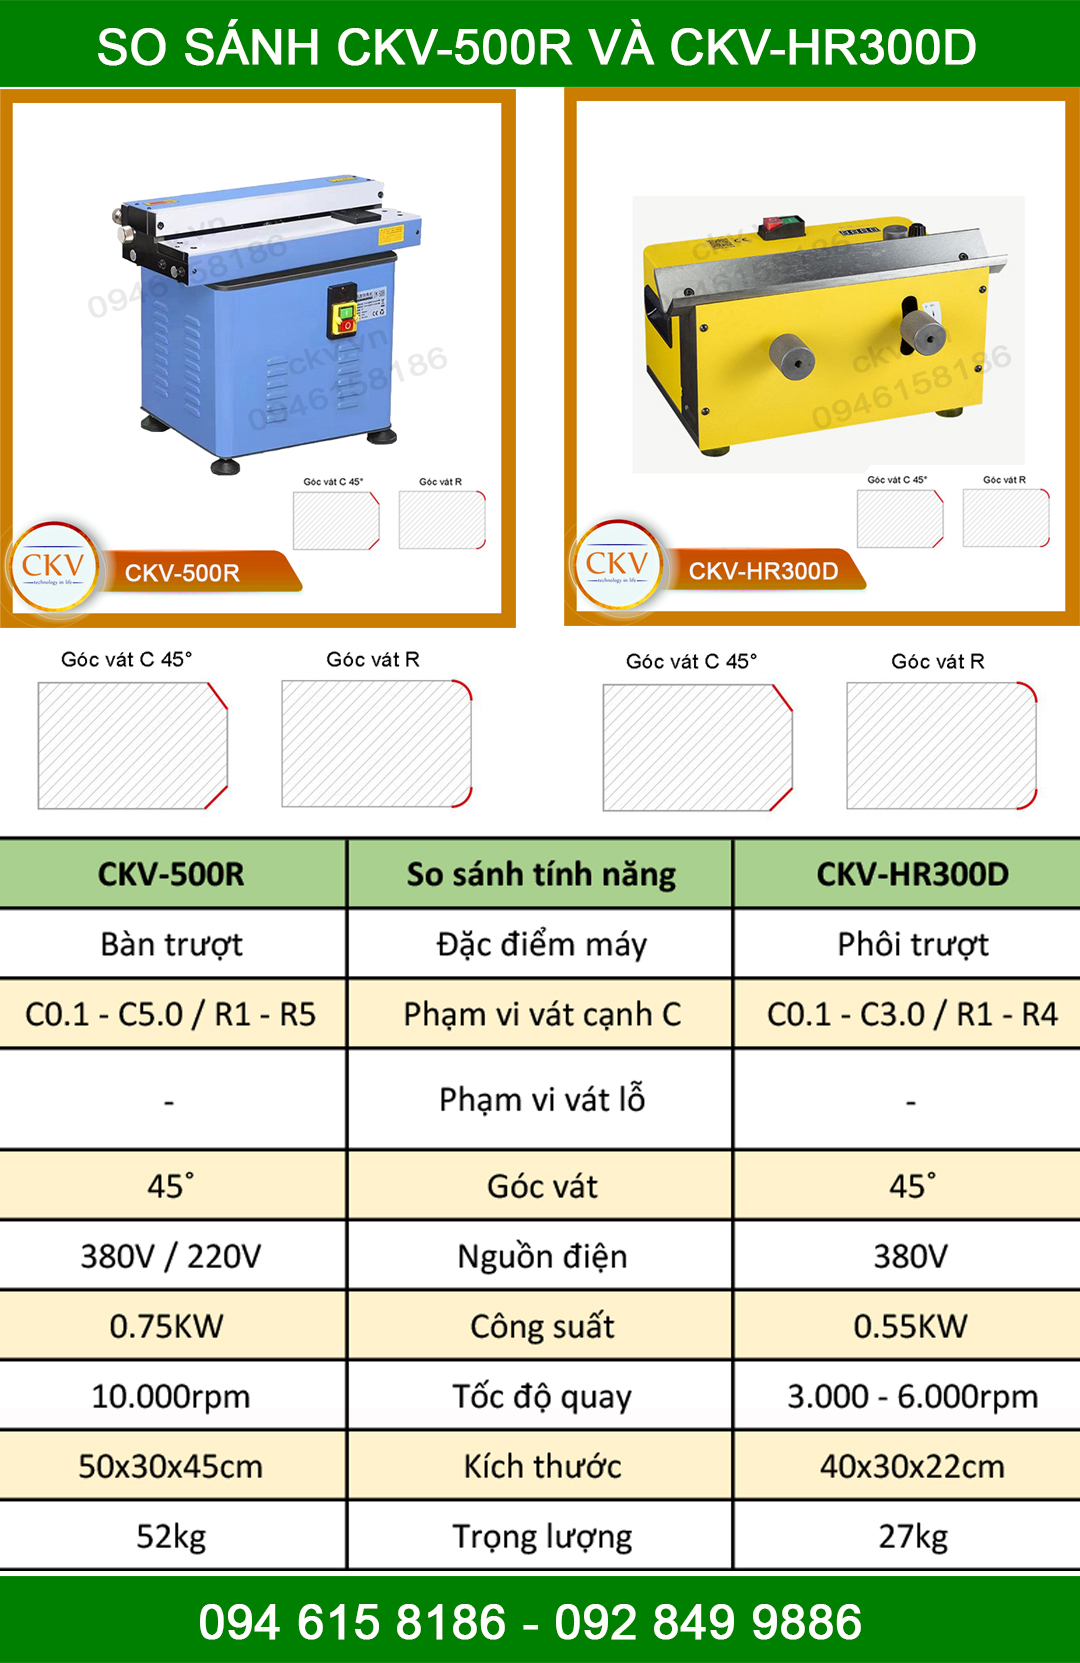 So sánh CKV-500R với CKV-HR300D